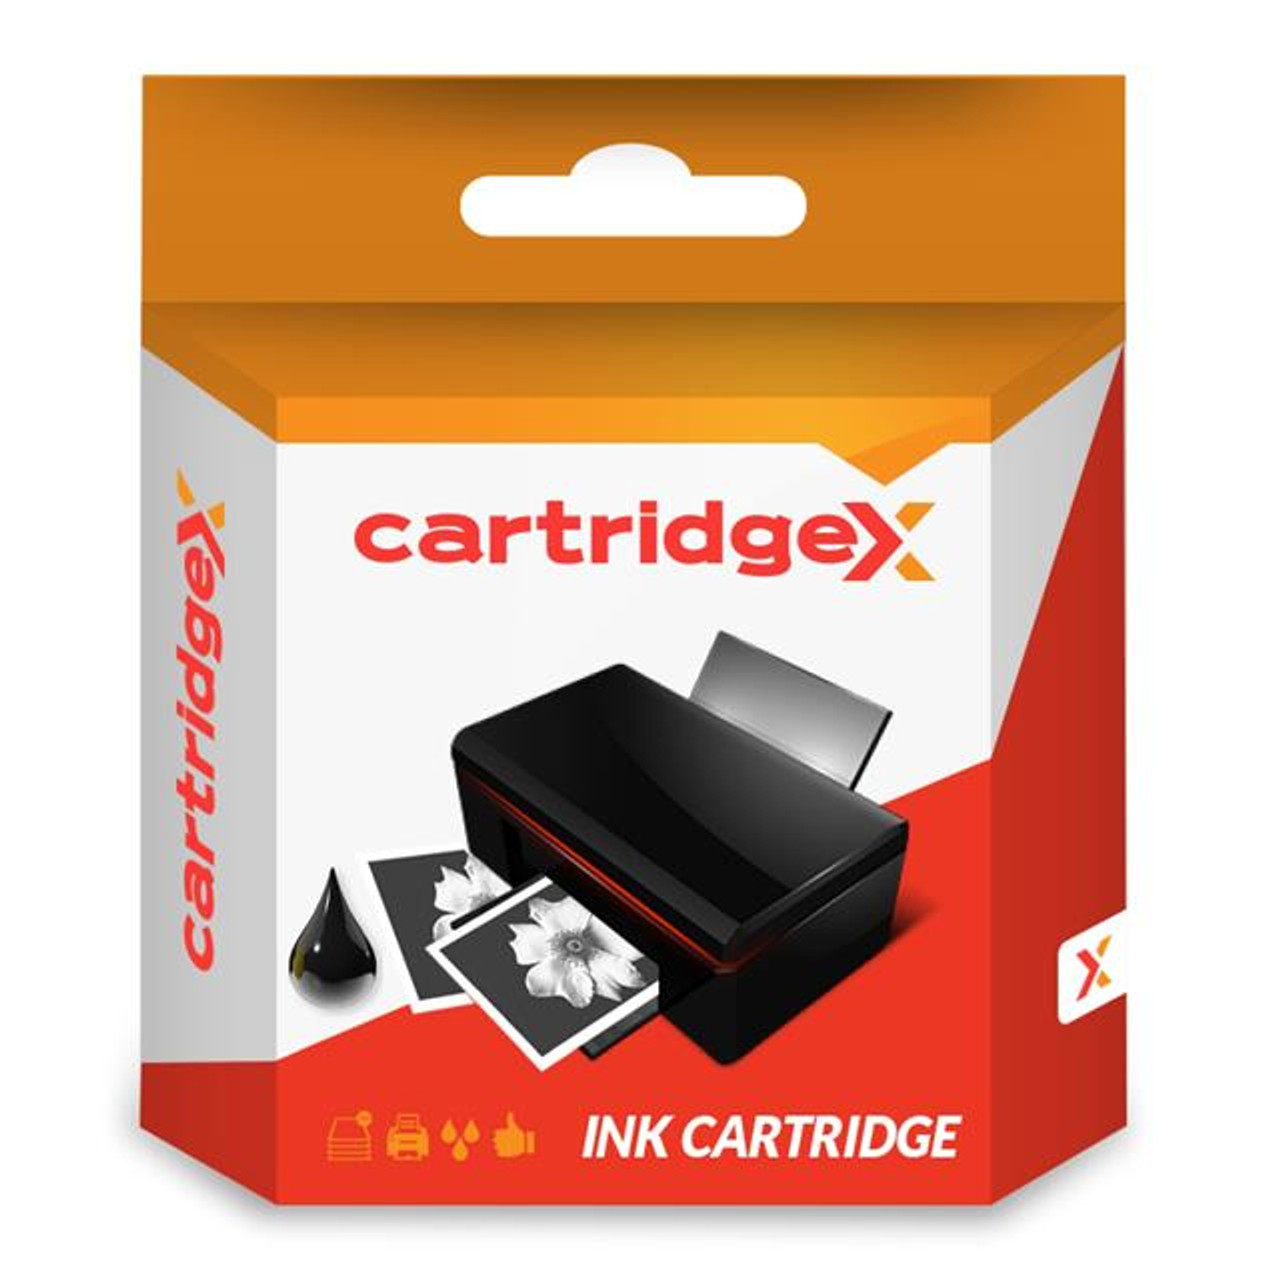 Compatible Black Ink Cartridge For Lexmark 50 17g0050 Z705 Z706 Z708 Z715 P700 P703 P704